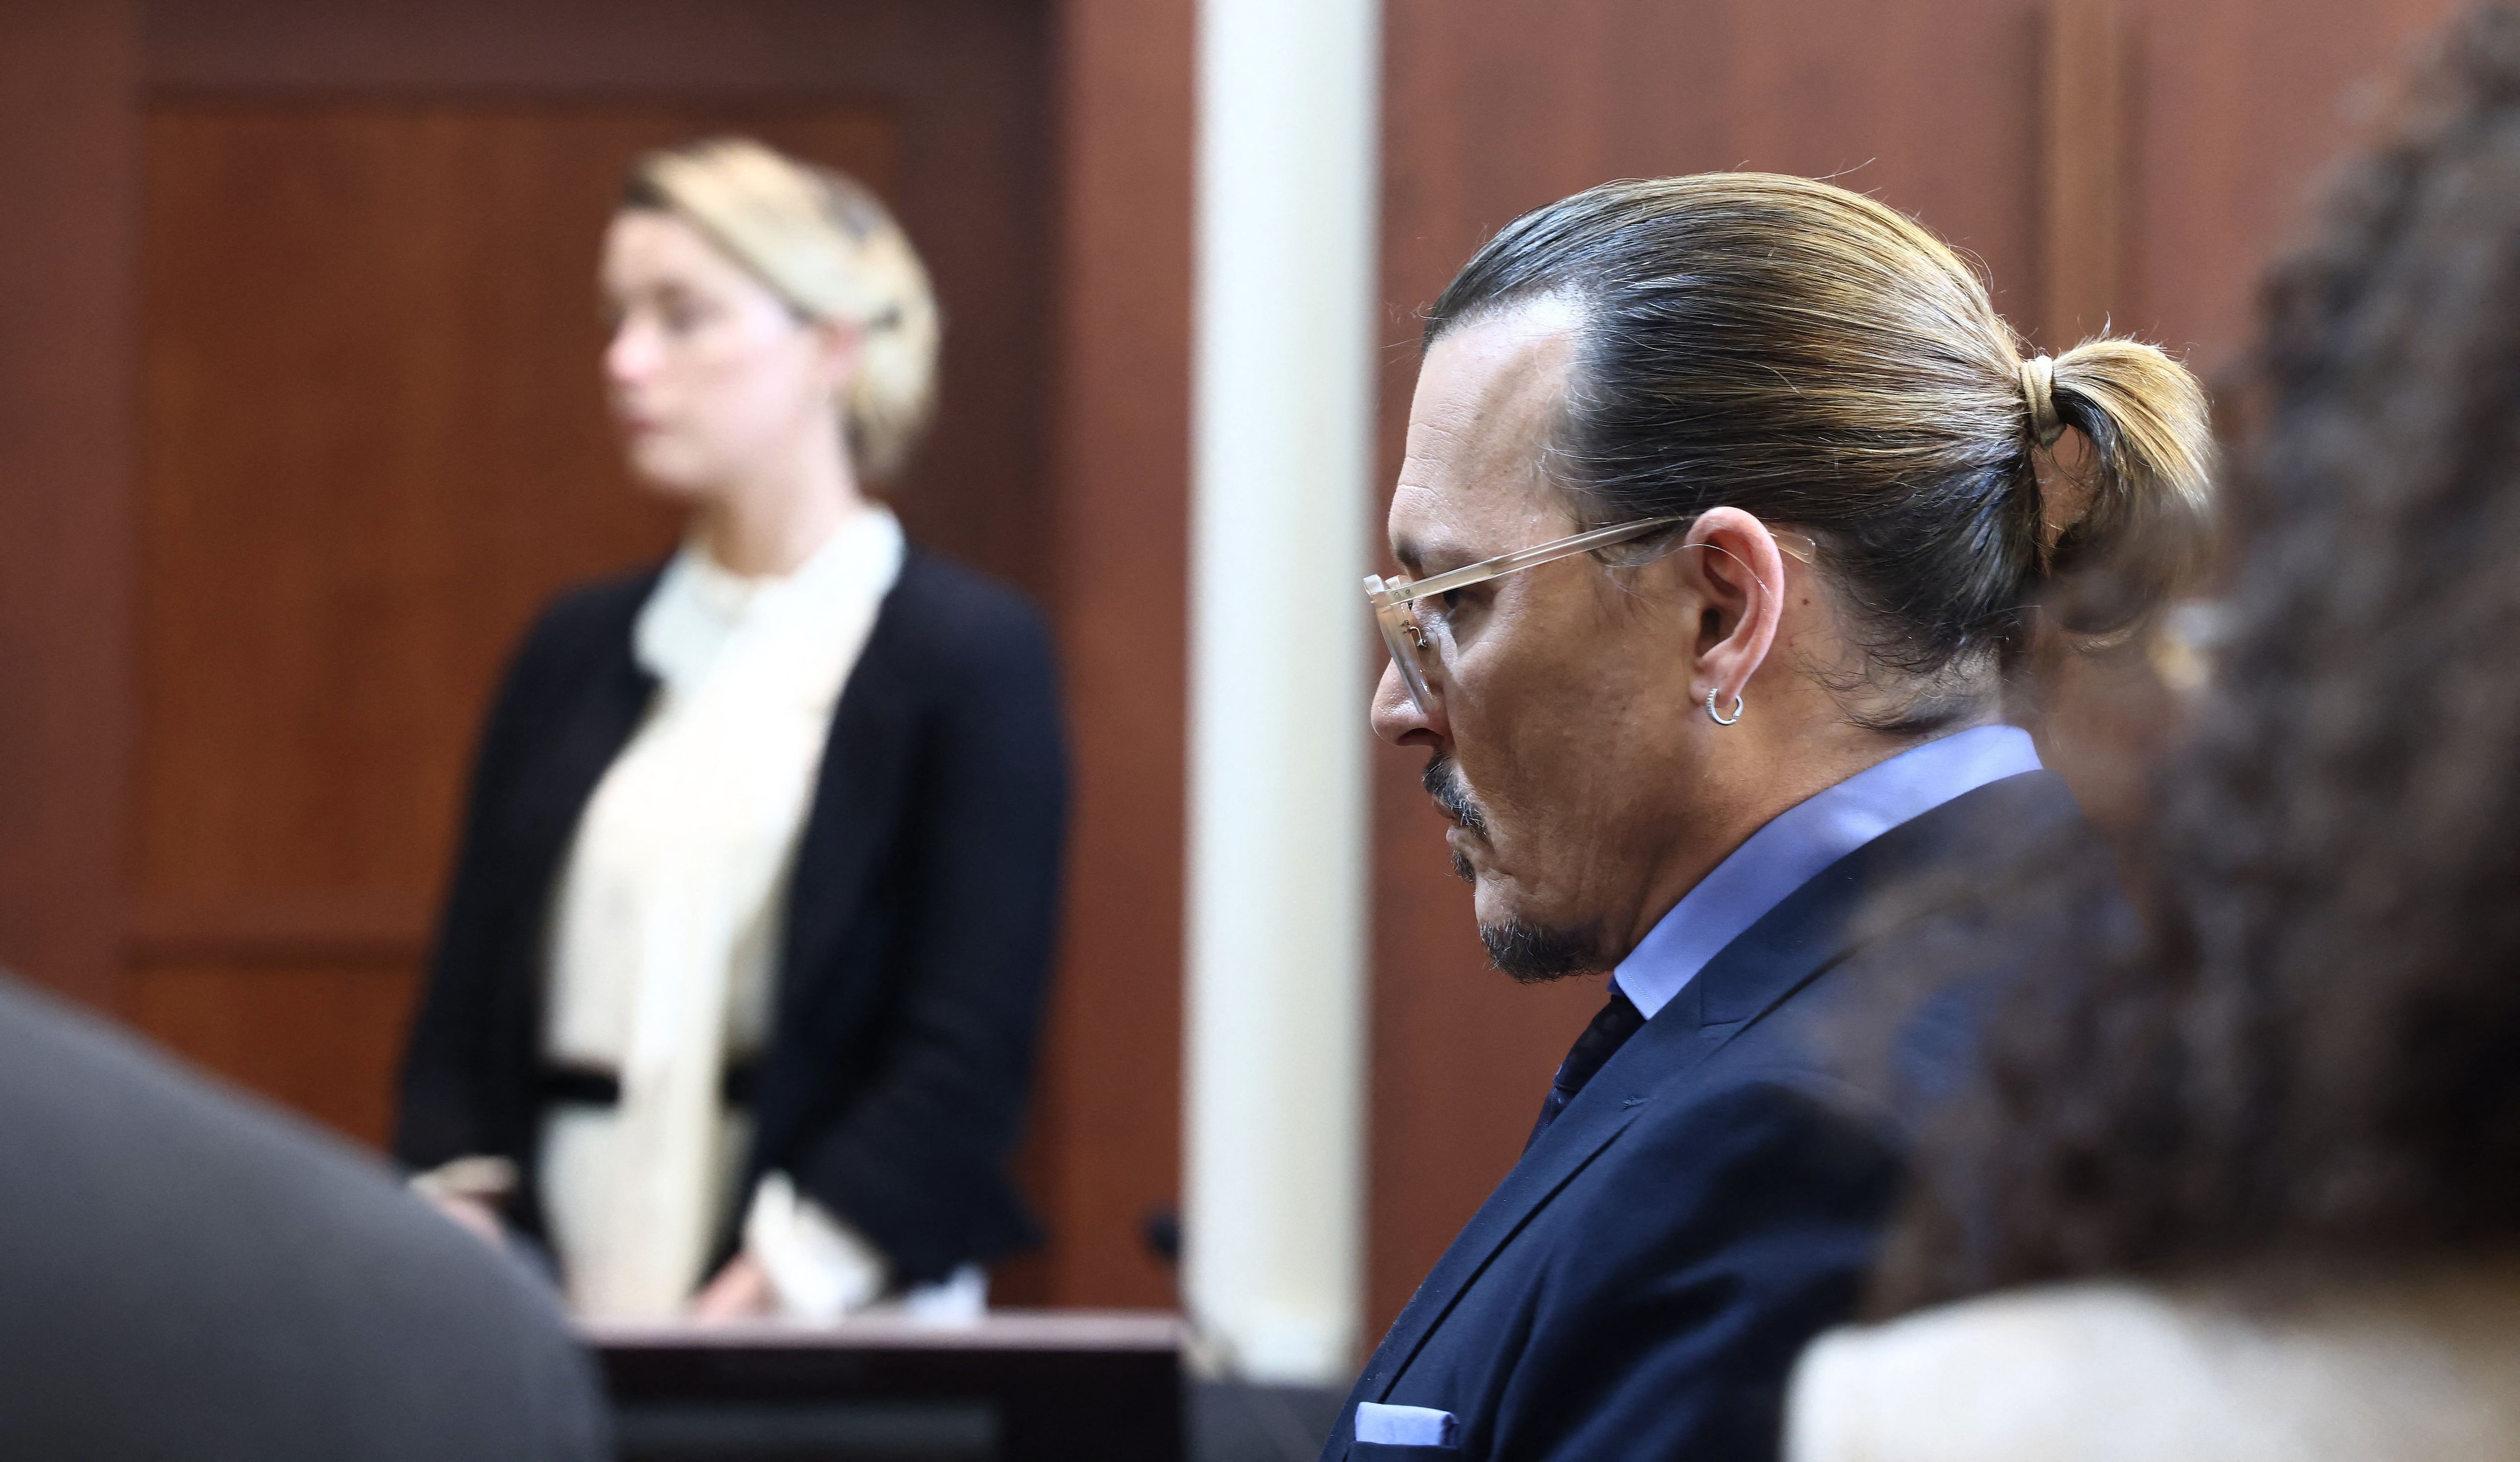 Amber Heard y Johnny Depp cruzaron miradas brevemente durante el juicio, pero ambos esquivaron el encuentro